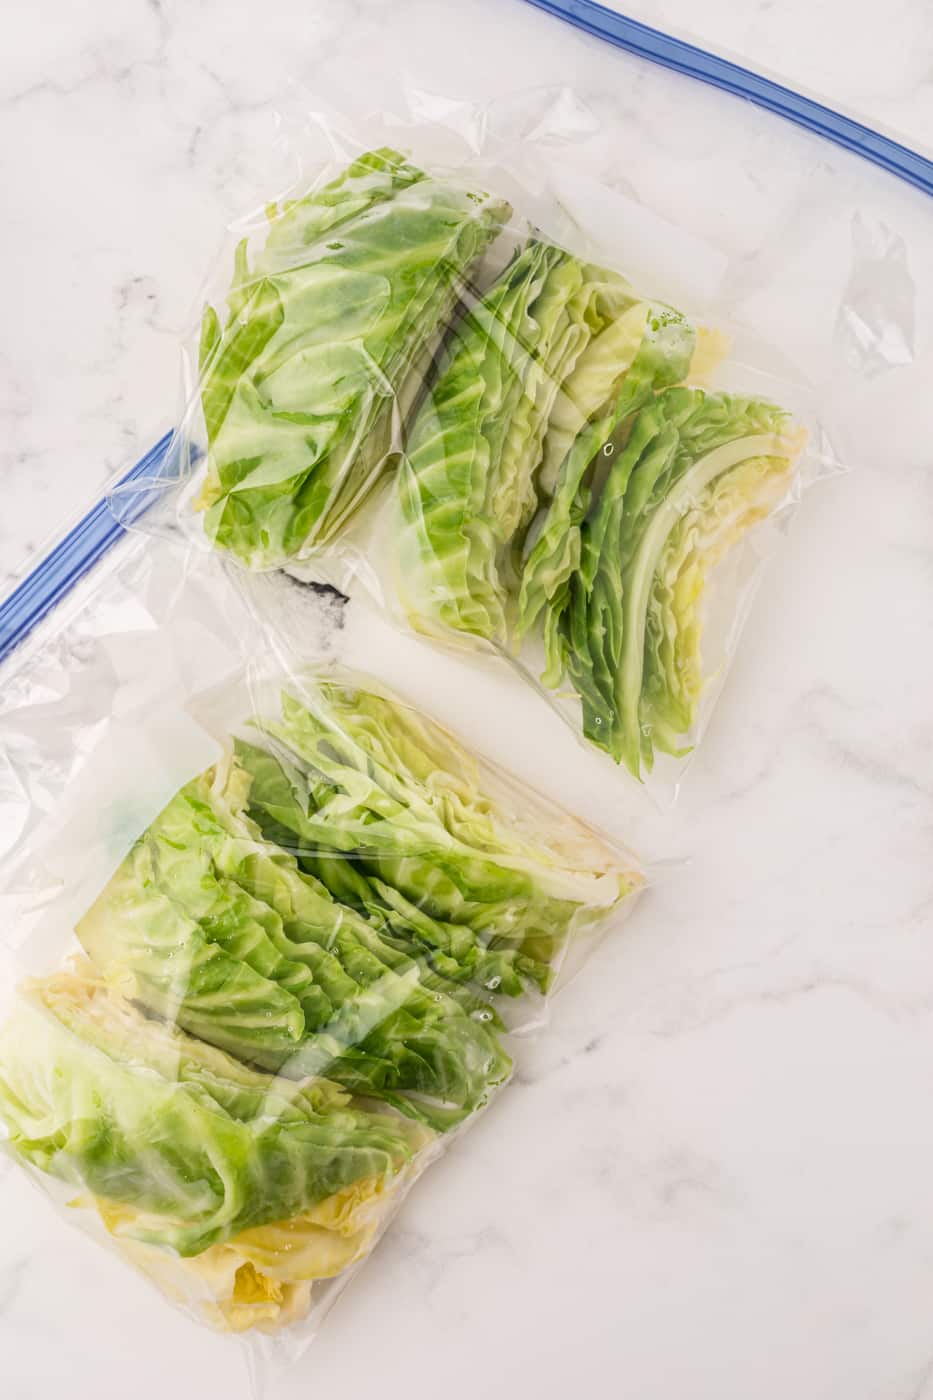 sliced cabbage that has been frozen in zip-top bags.